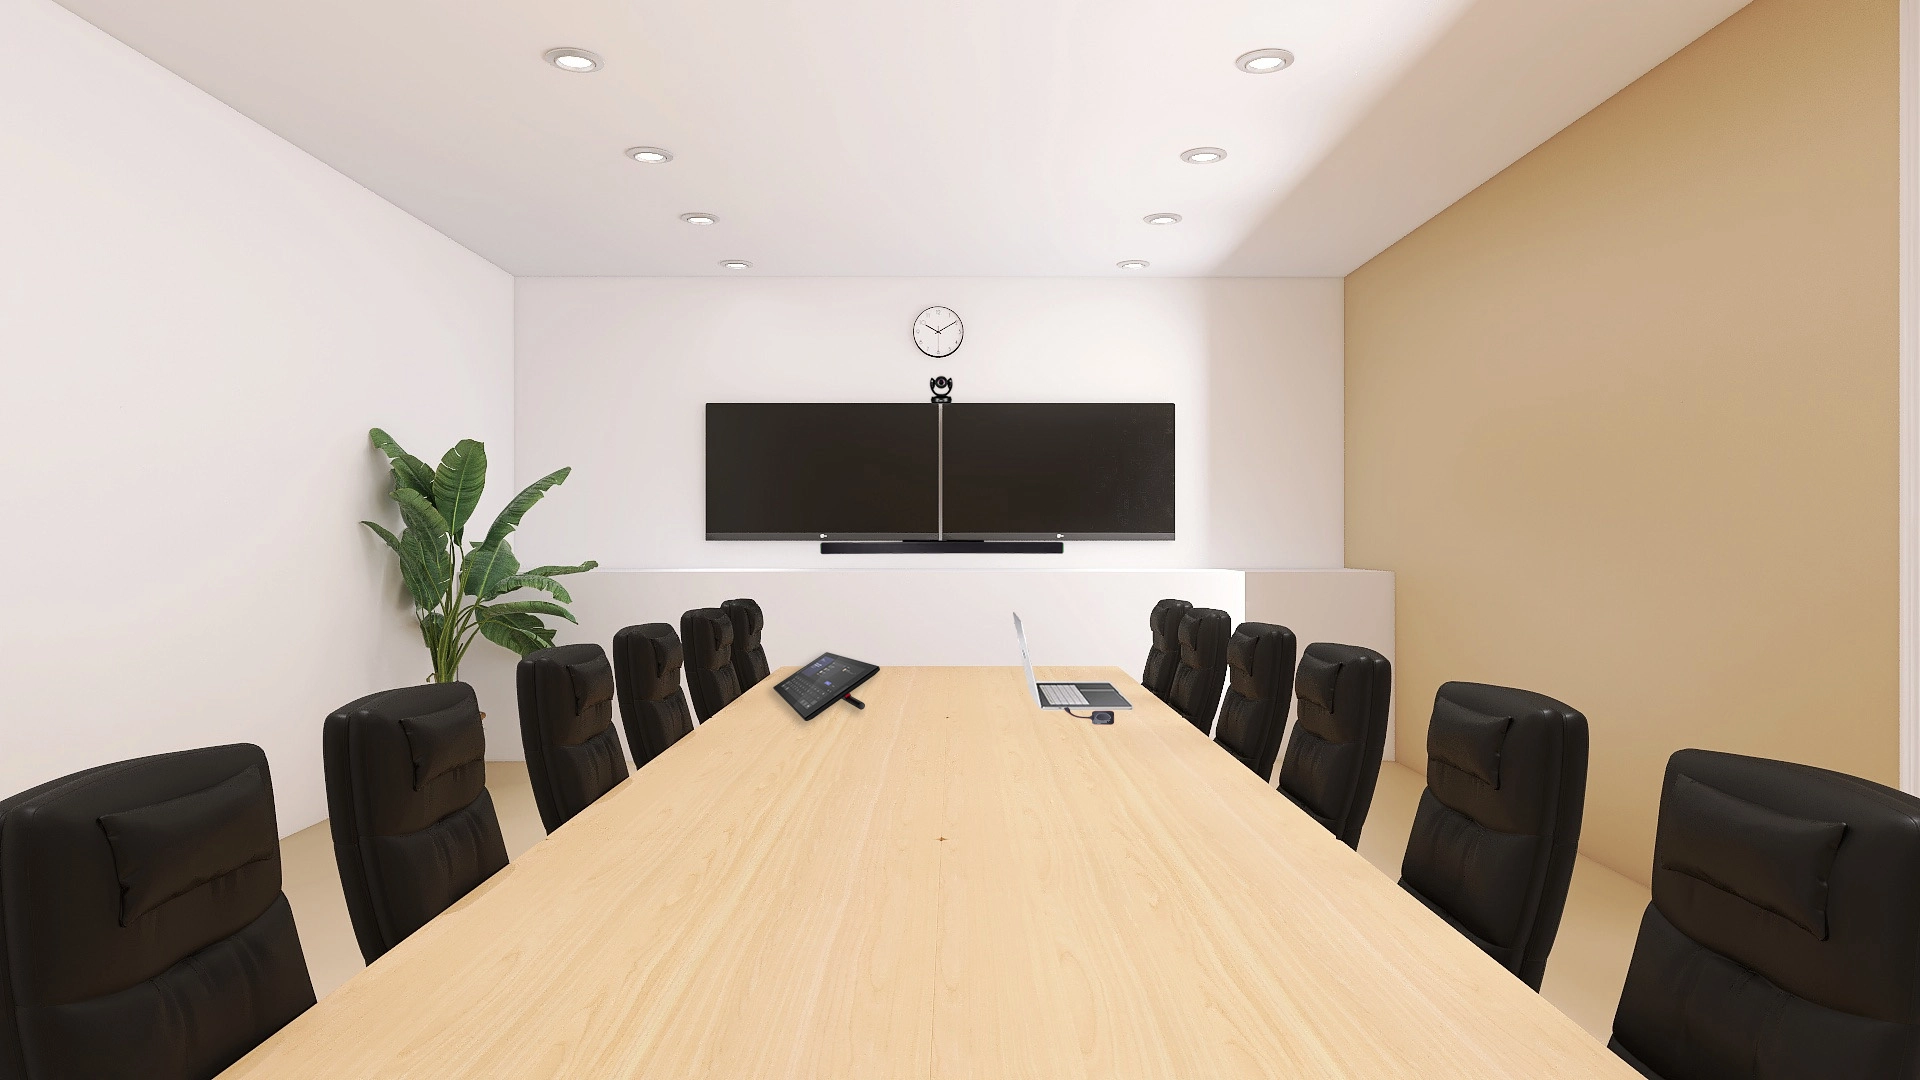 中会議室にMicrosoft Teams Roomsを導入した構成イメージ